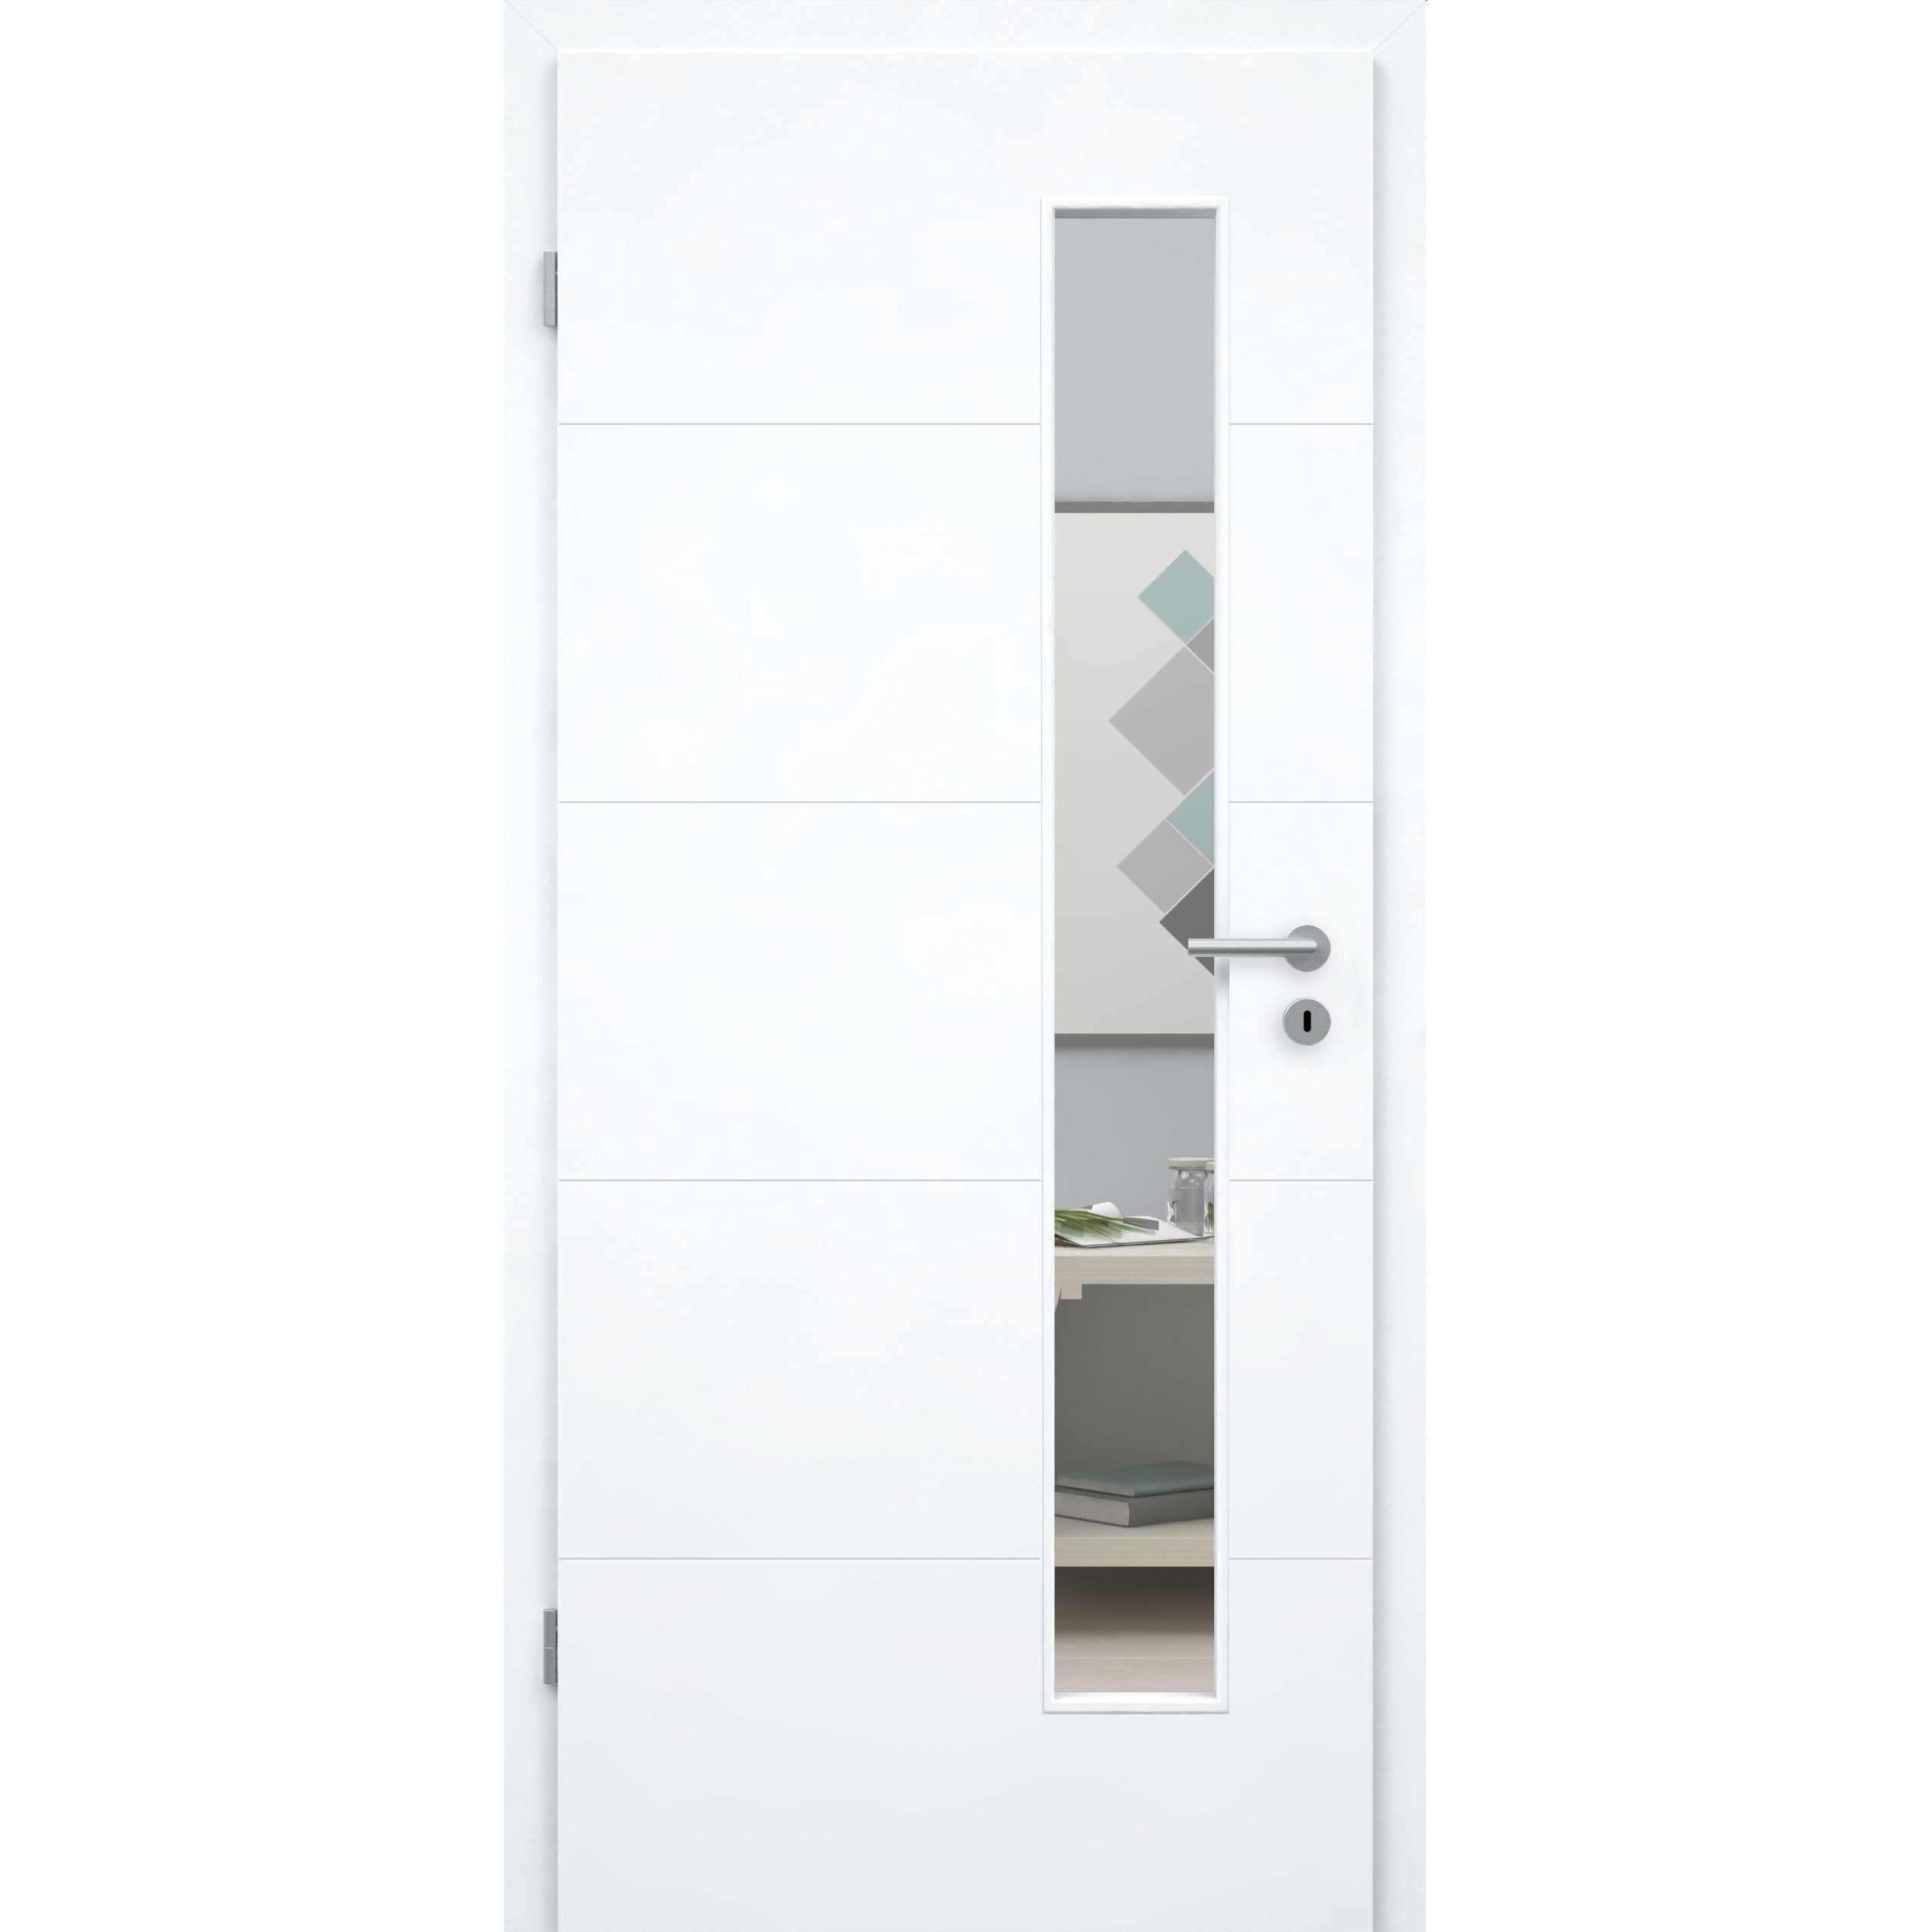 Zimmertür mit Lichtausschnitt brillant-weiß 4 Rillen Designkante - Modell Designtür Q43LAS